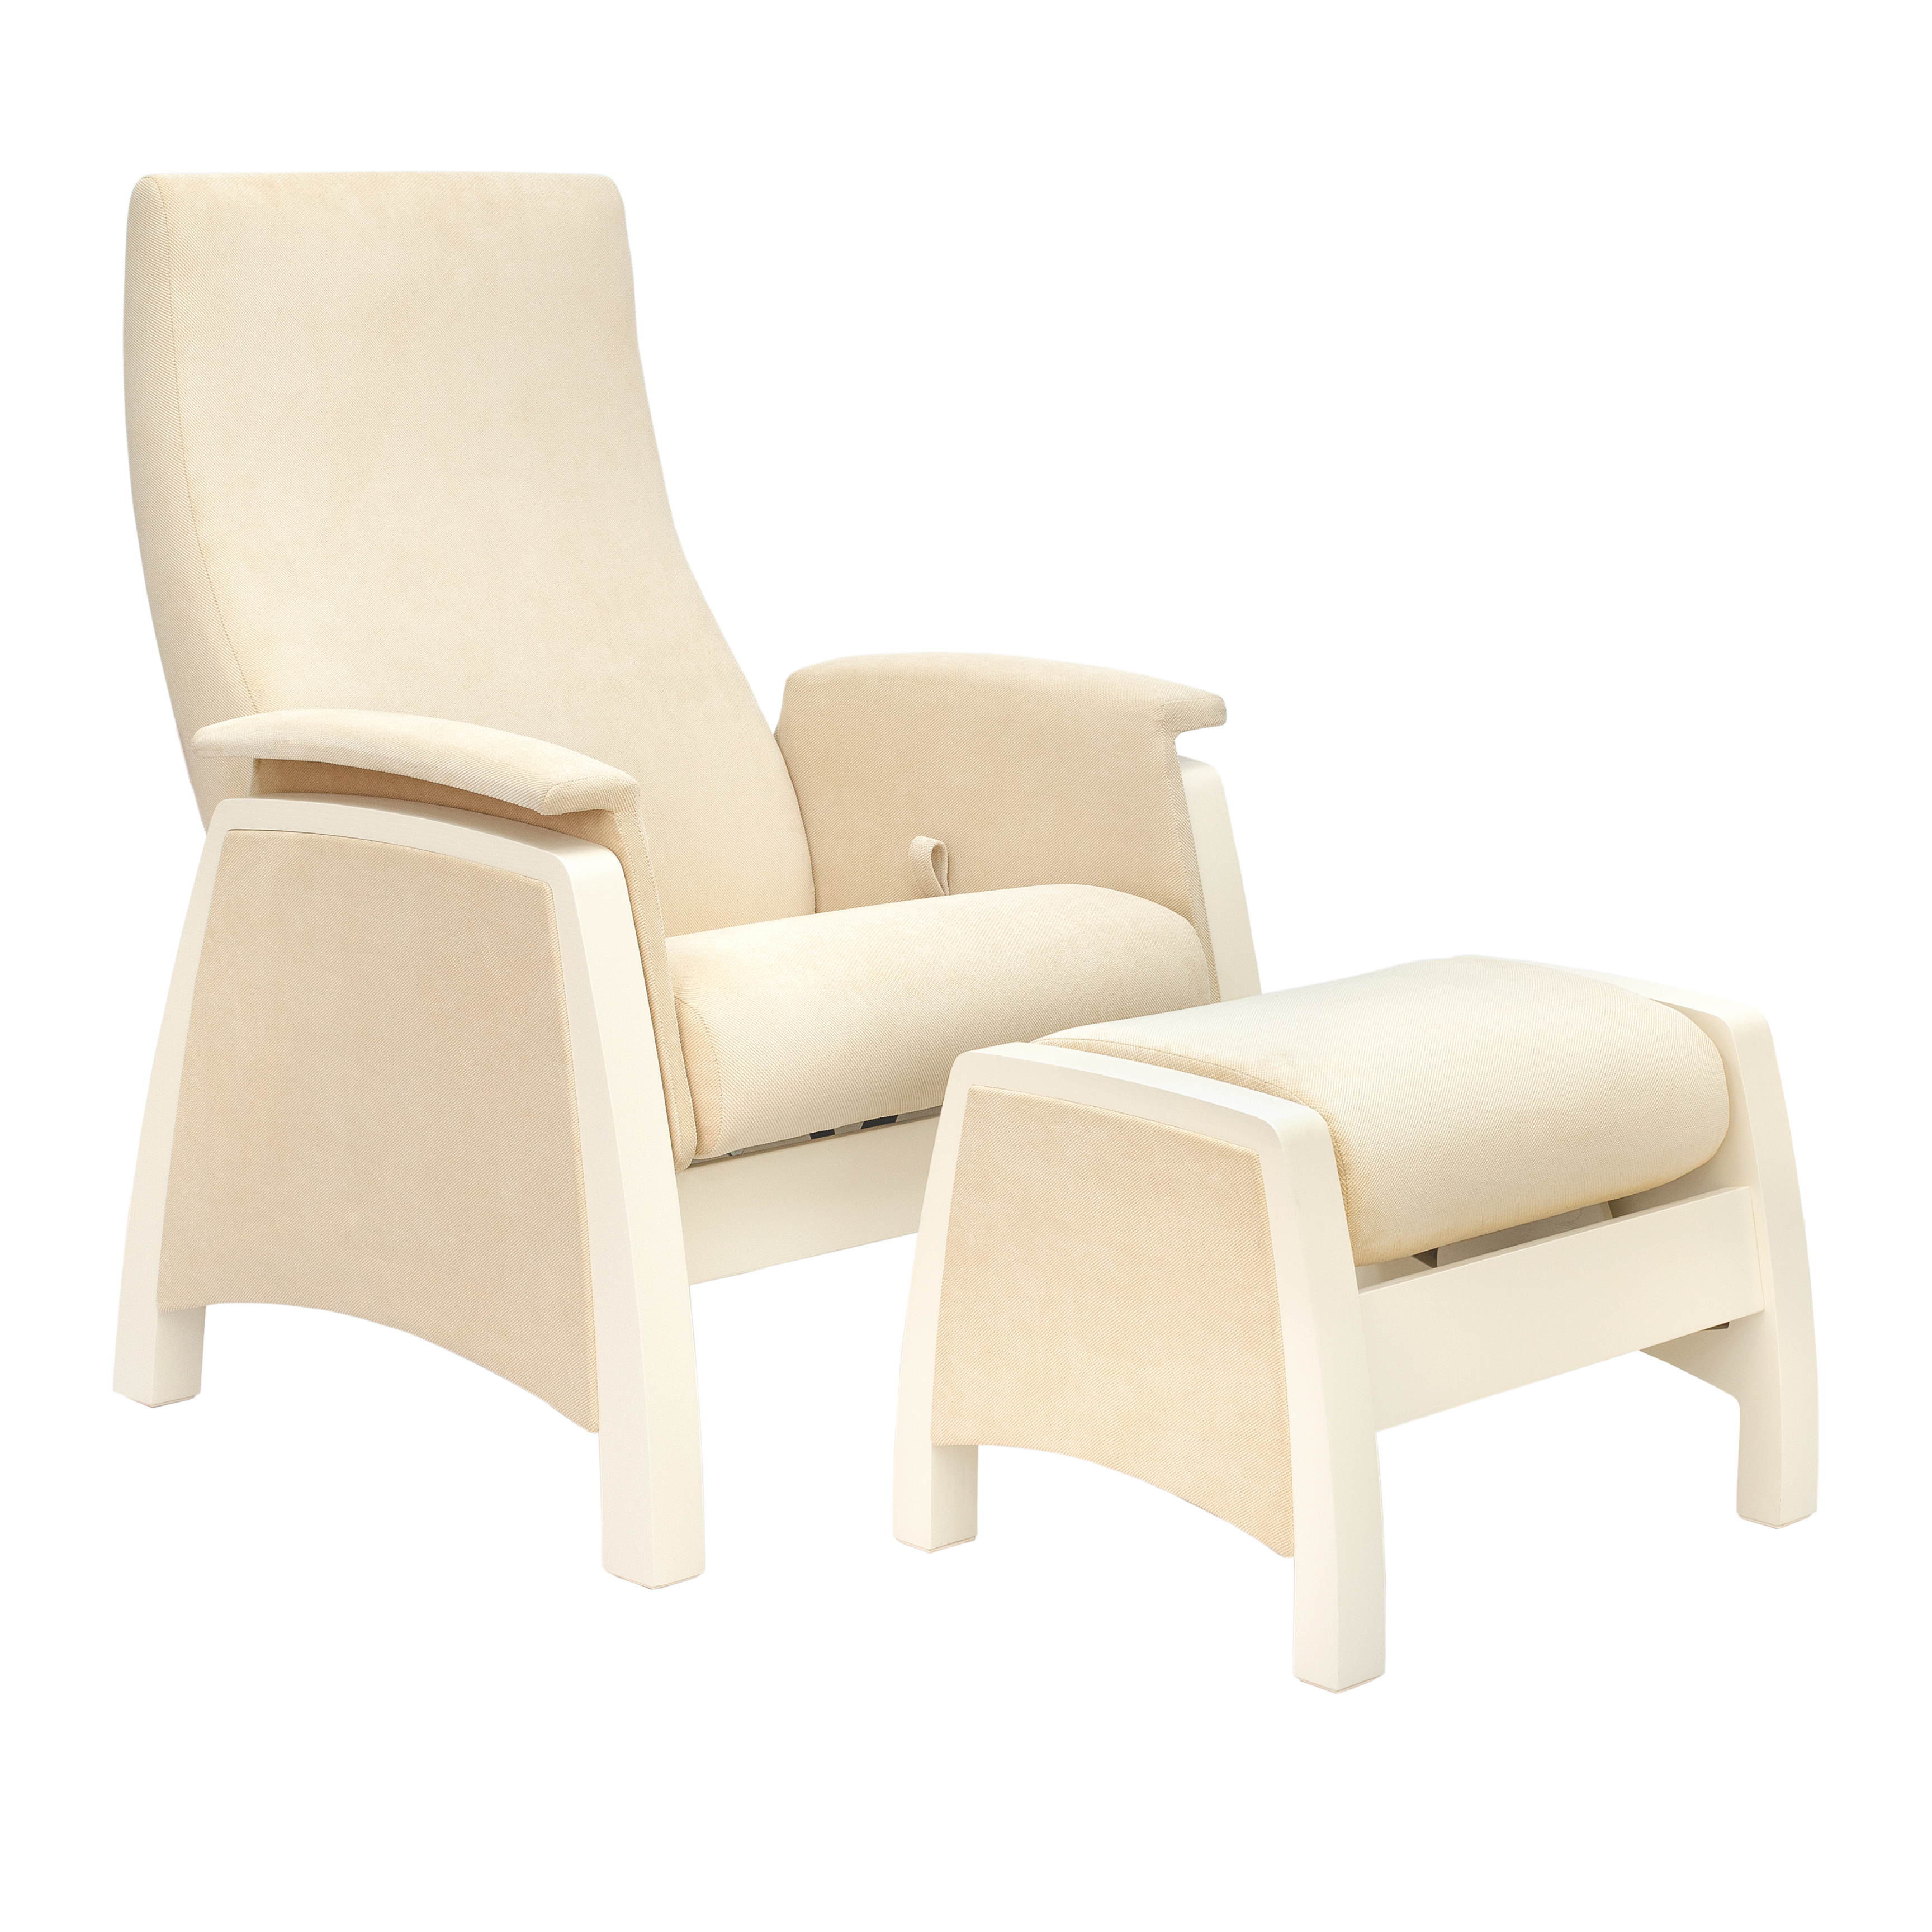 Комплект кресло-глайдер с пуфом для беременных и кормящих Milli Sky,  Дуб шампань, ткань Verona 